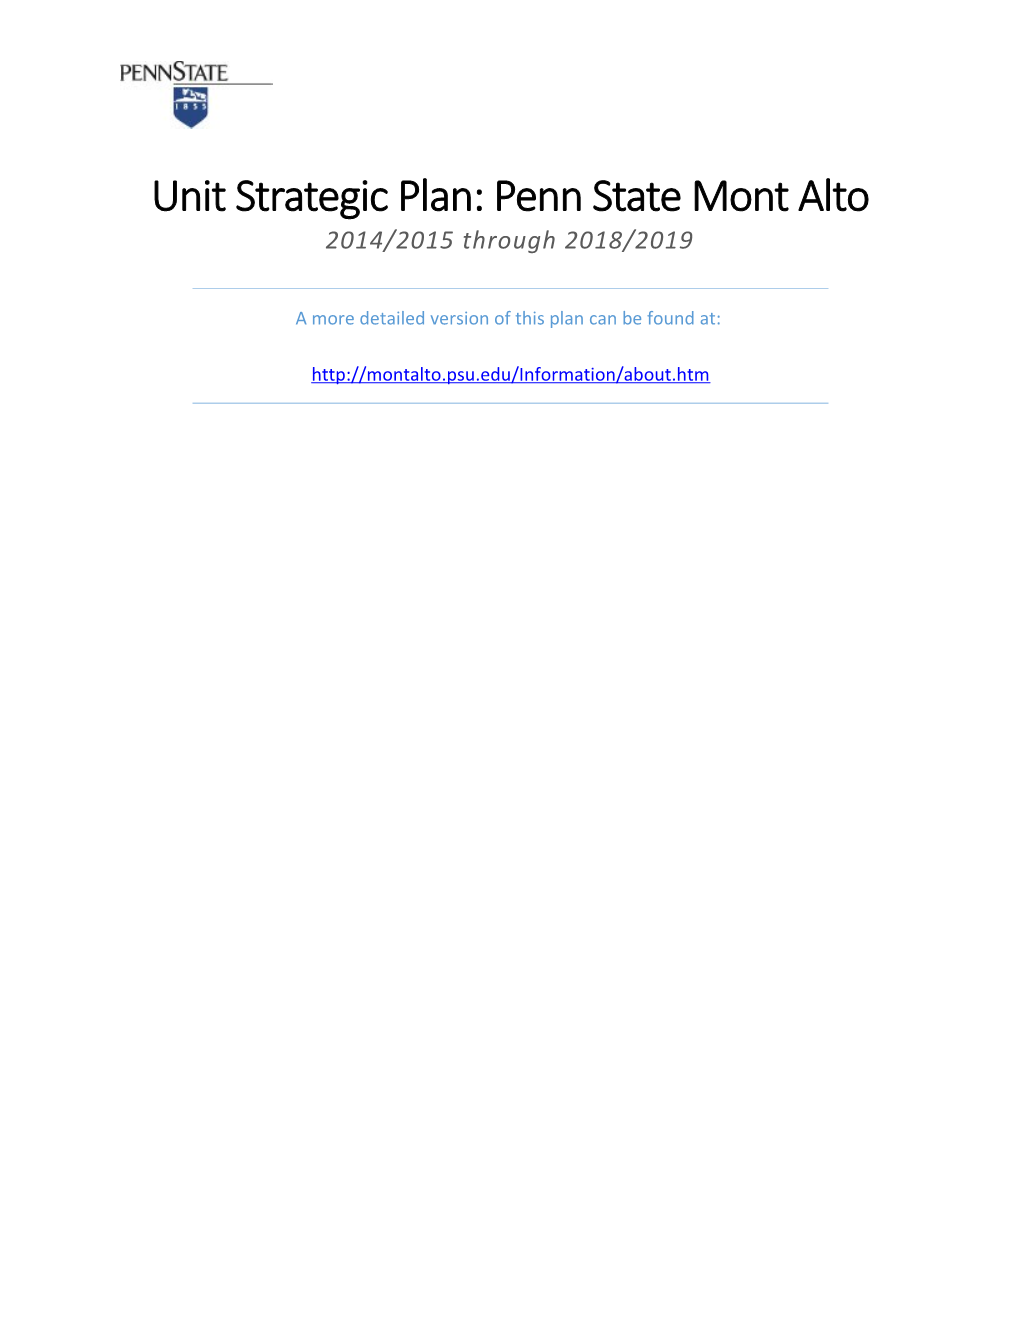 Penn State Mont Alto Strategic Plan